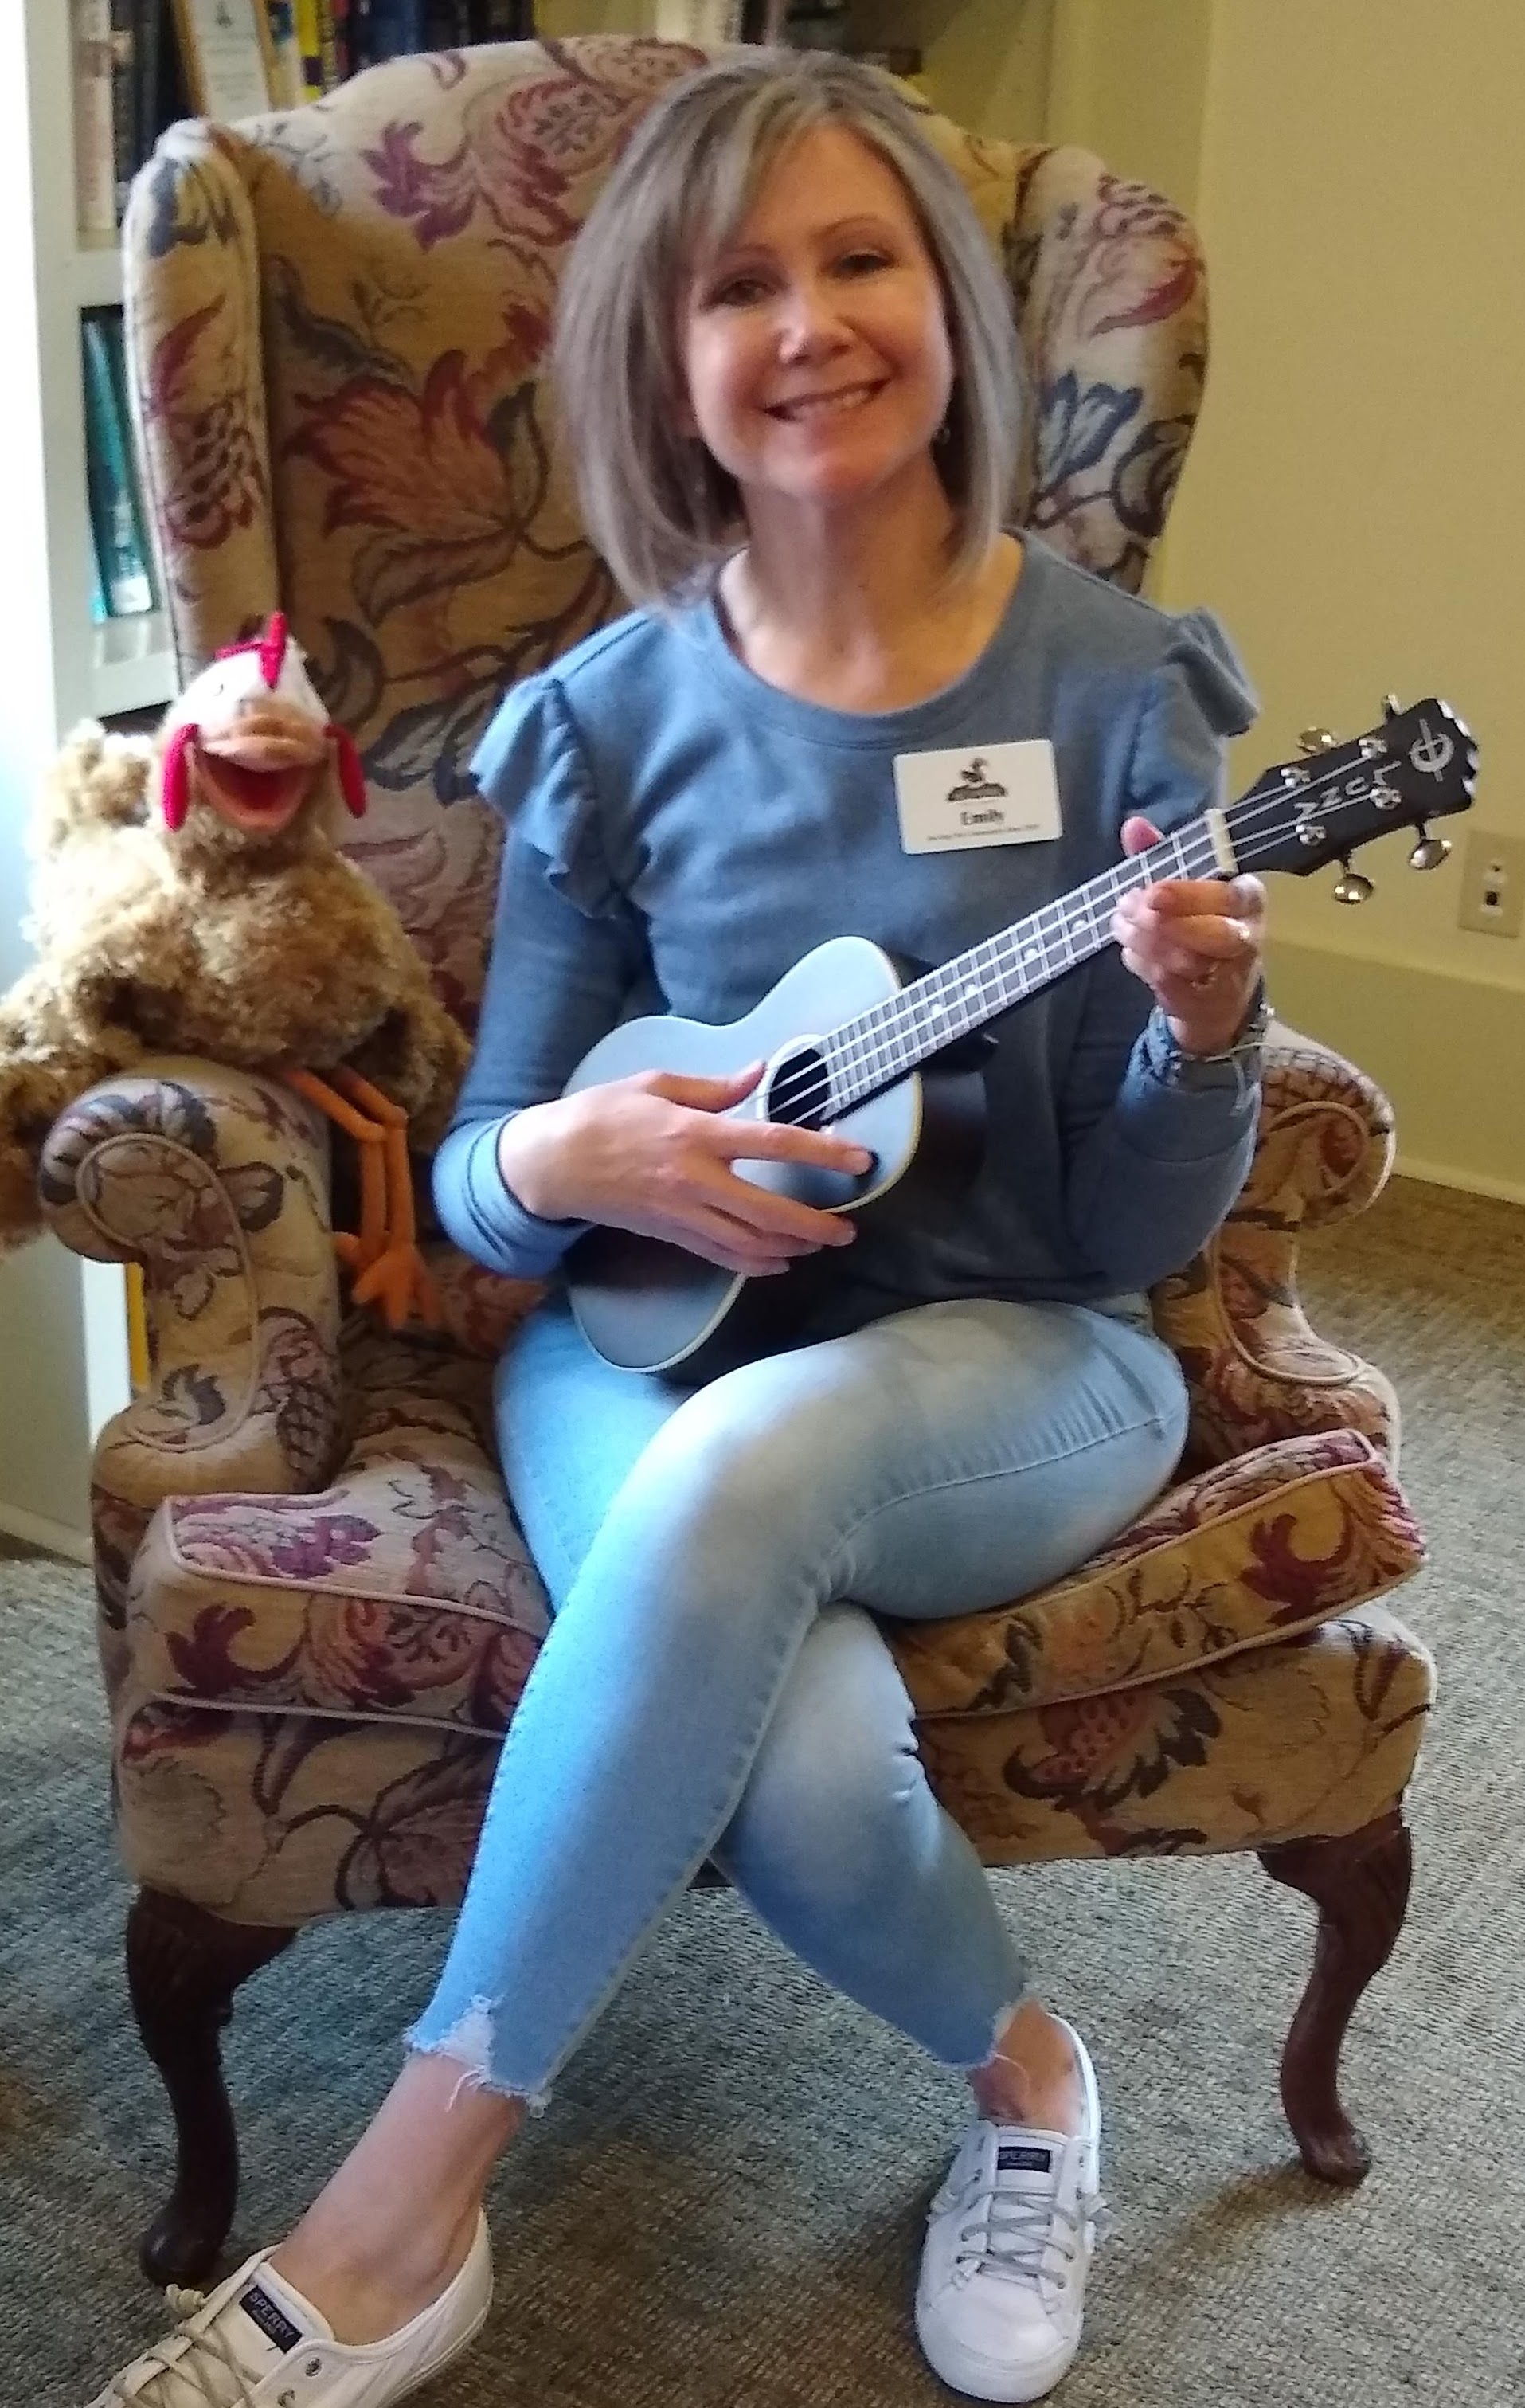 Image of storyteller with ukulele.